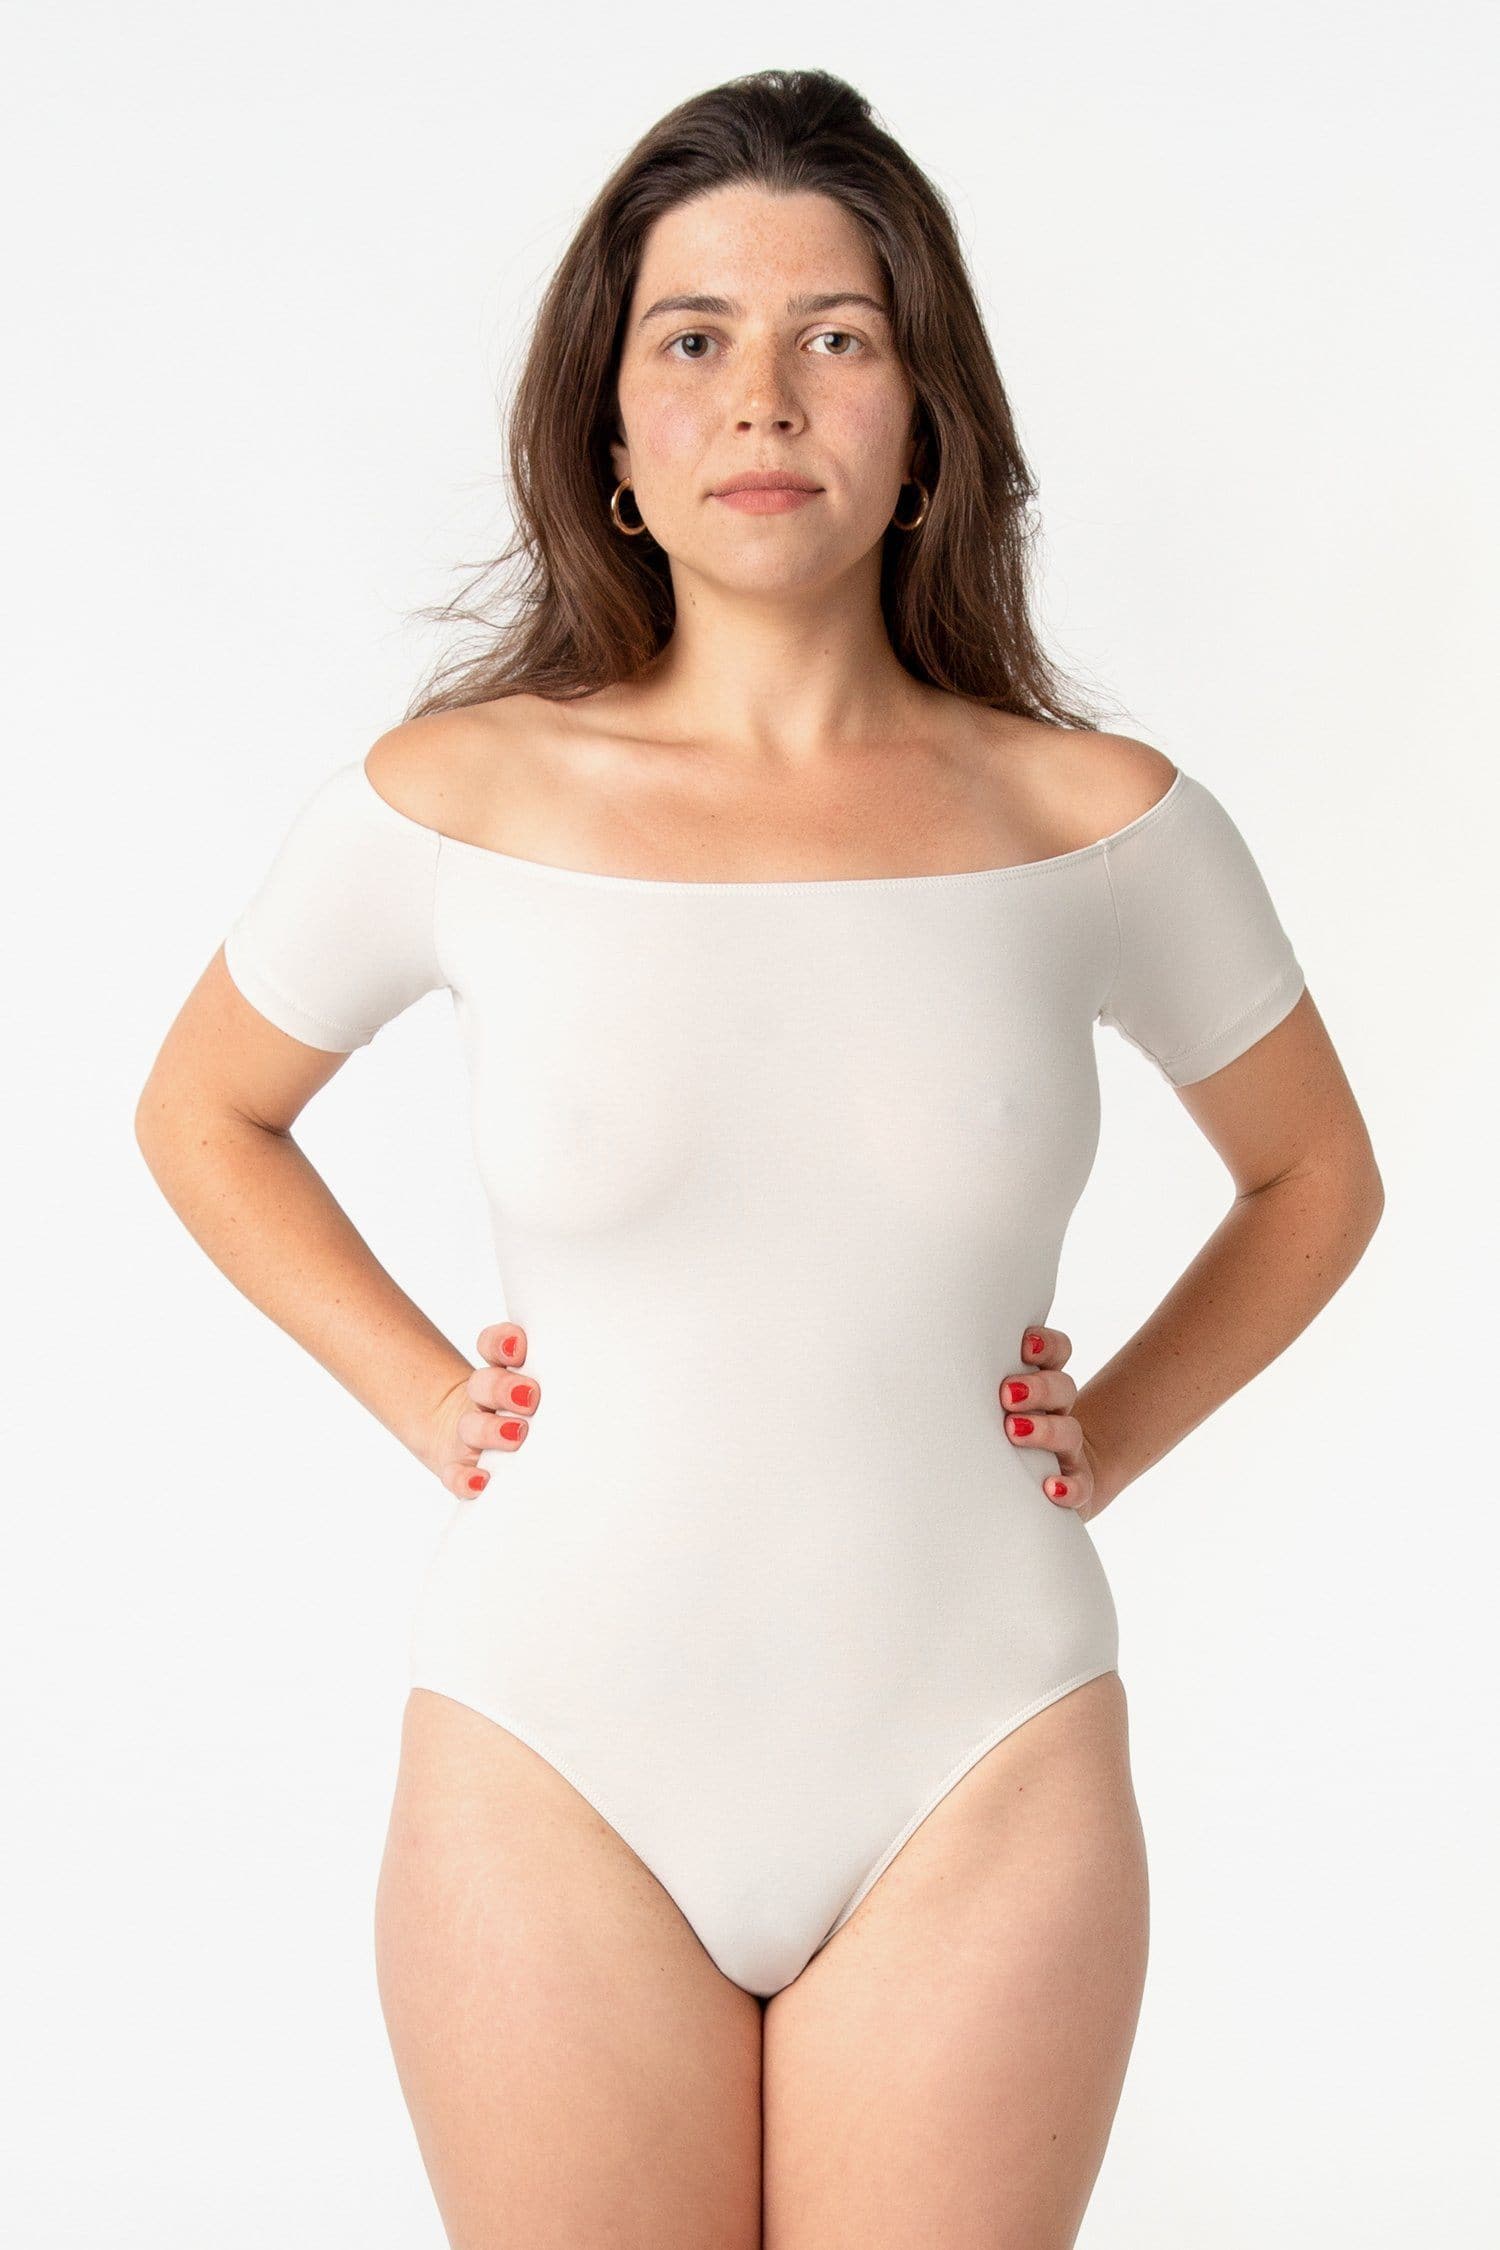 White Bodysuits, Off White Bodysuits